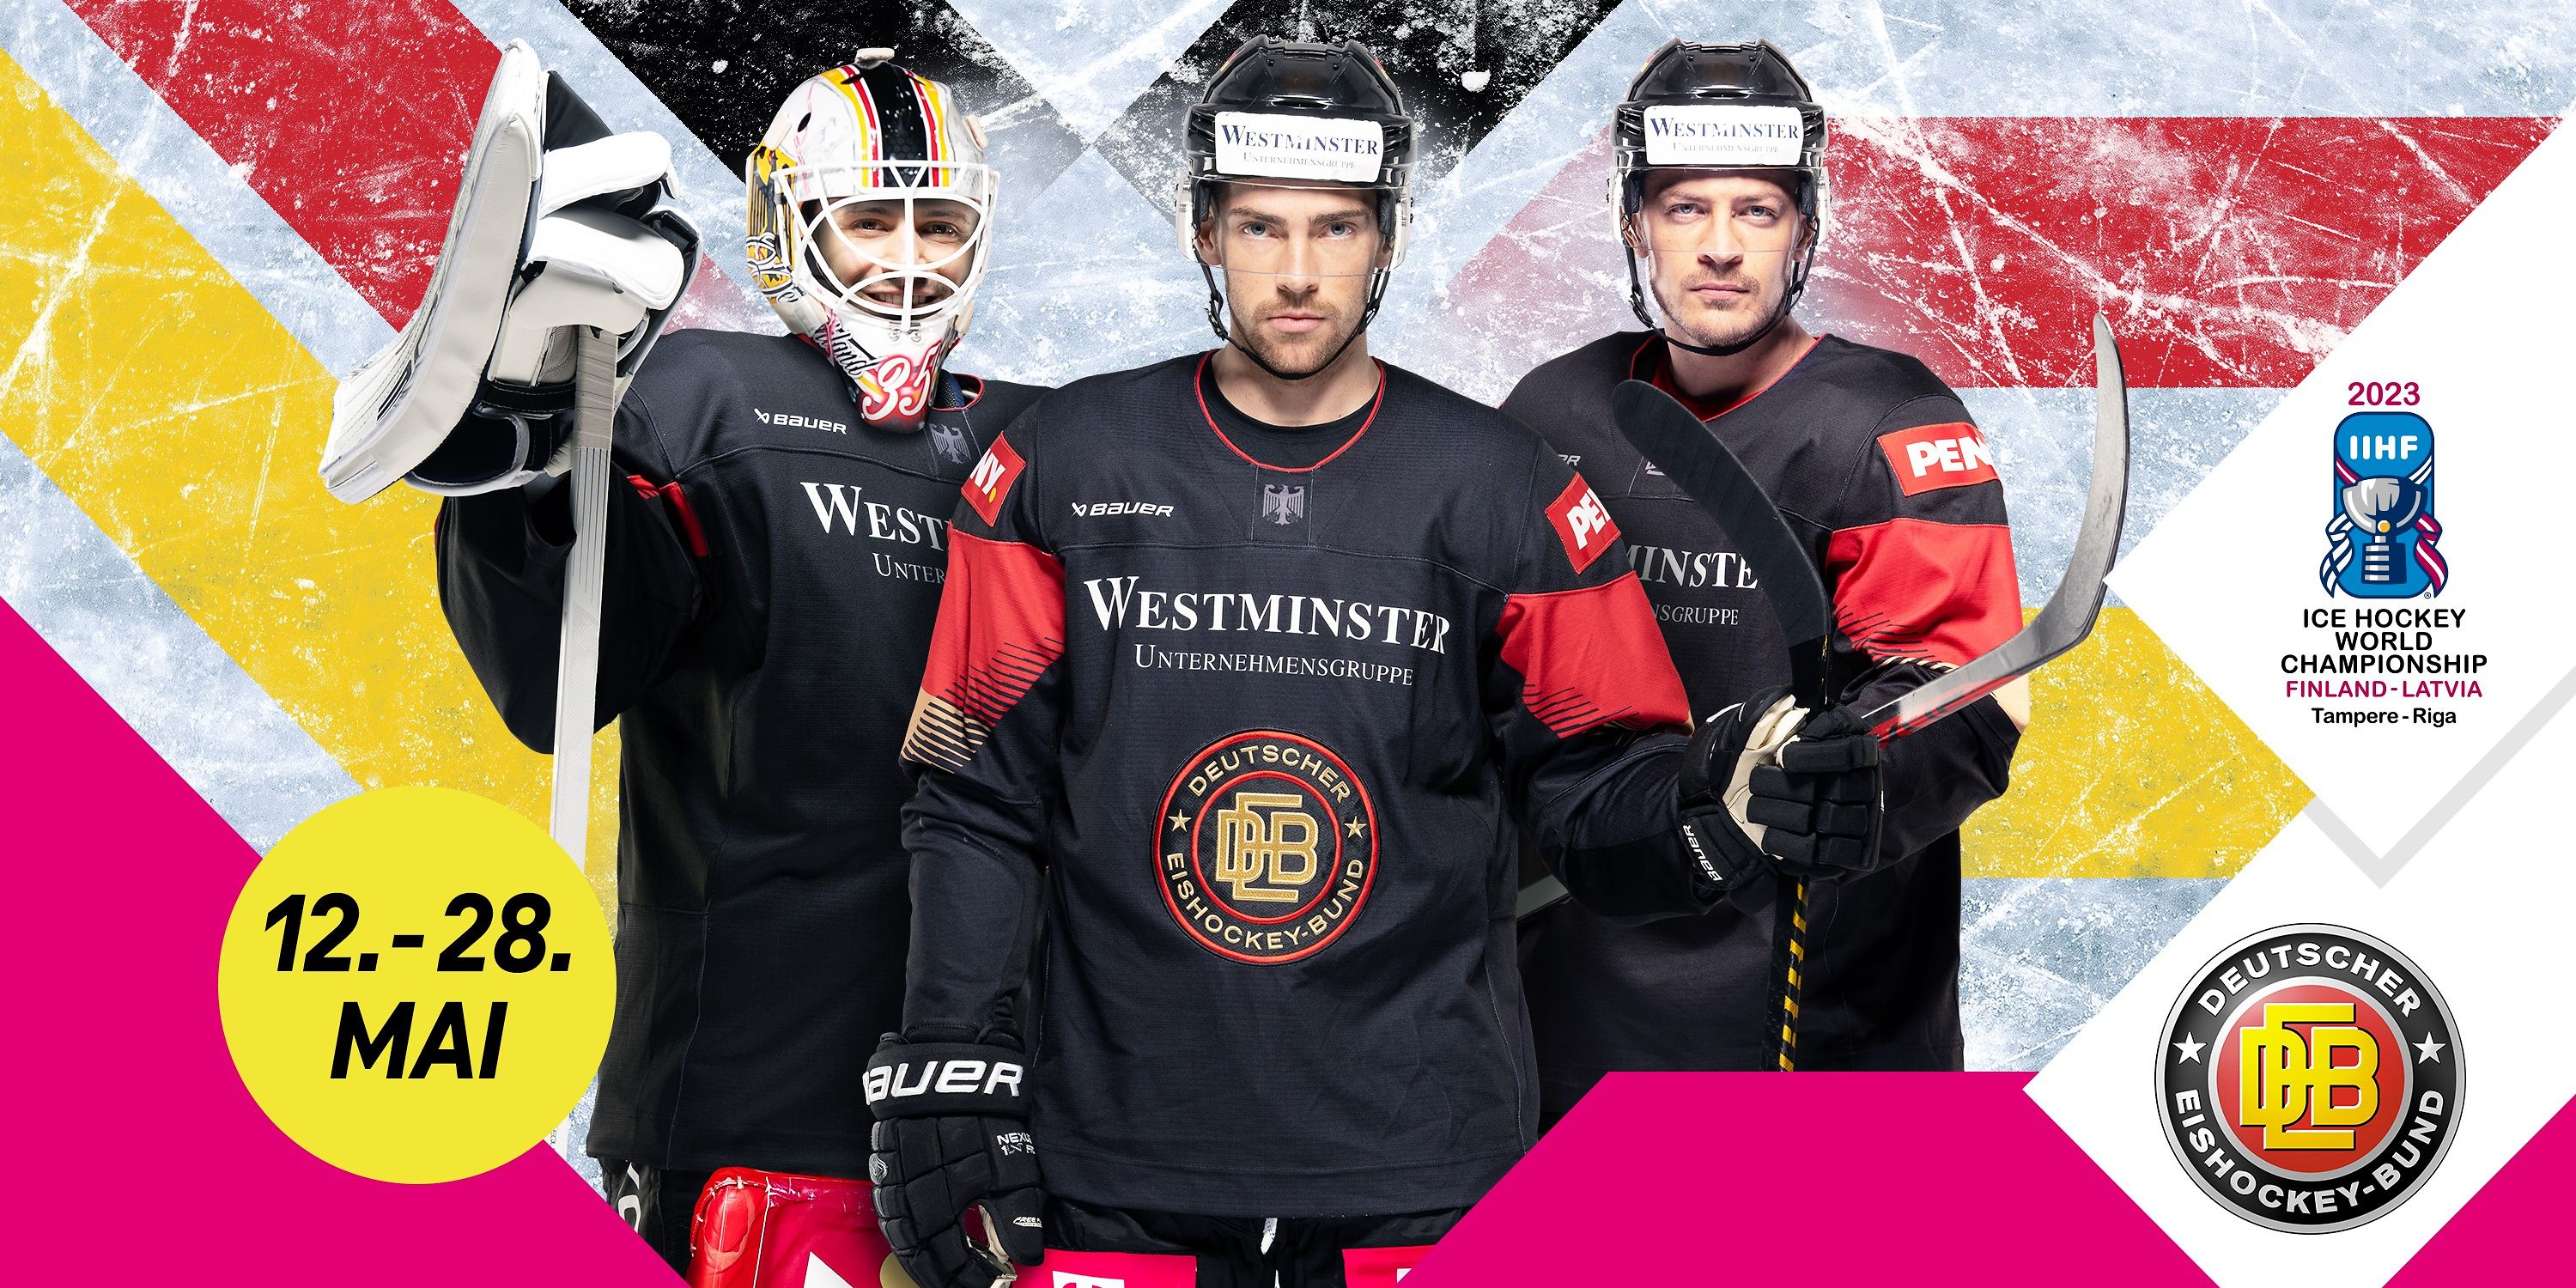 MagentaSport rundet Rekord-Eishockey-Saison mit Weltmeisterschaft ab Deutsche Telekom